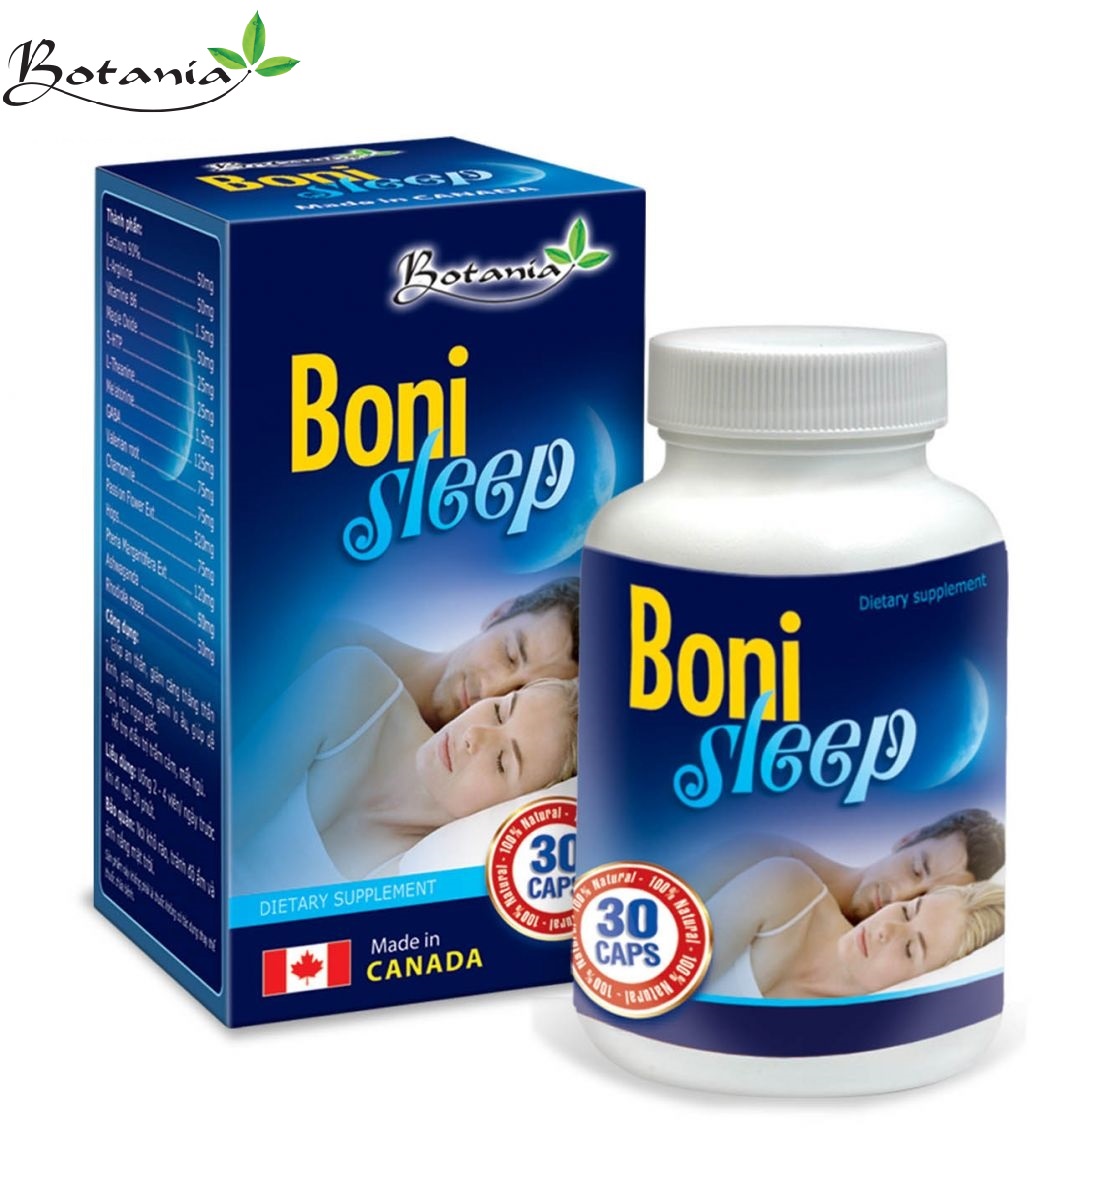 Thực phẩm bảo vệ sức khỏe BoniSleep + hỗ trợ giảm căng thẳng thần kinh, giảm stress, giảm lo âu. Giúp an thần, dễ ngủ, ngủ ngon giấc